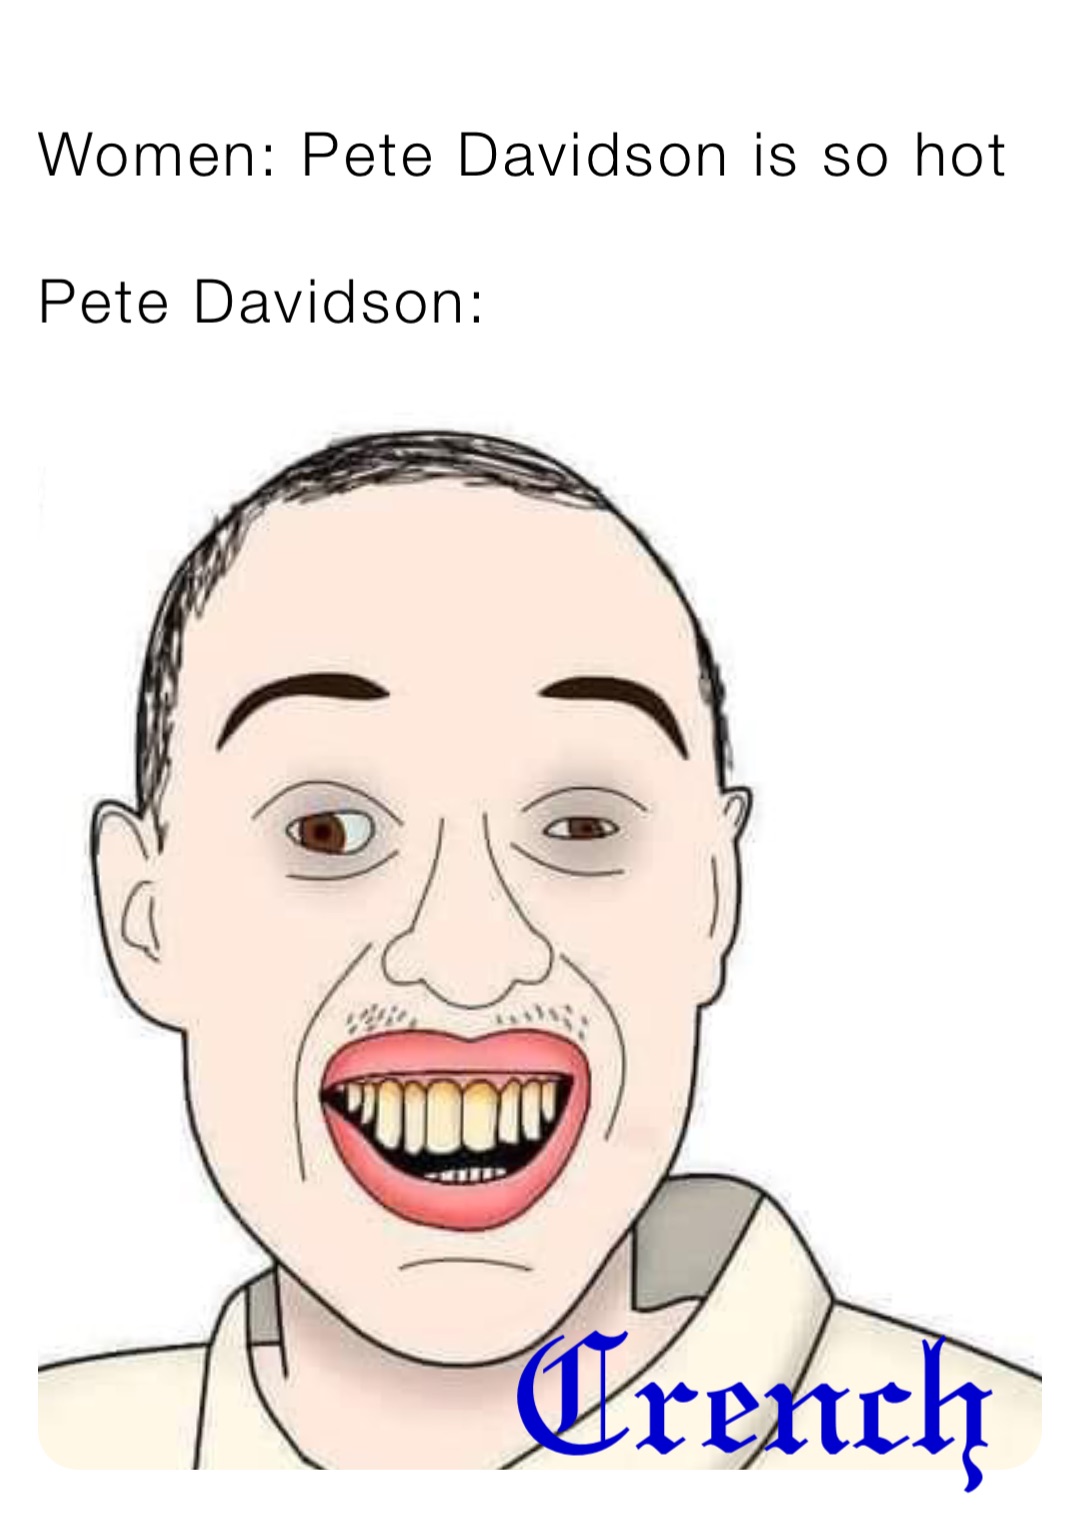 Women: Pete Davidson is so hot

Pete Davidson: